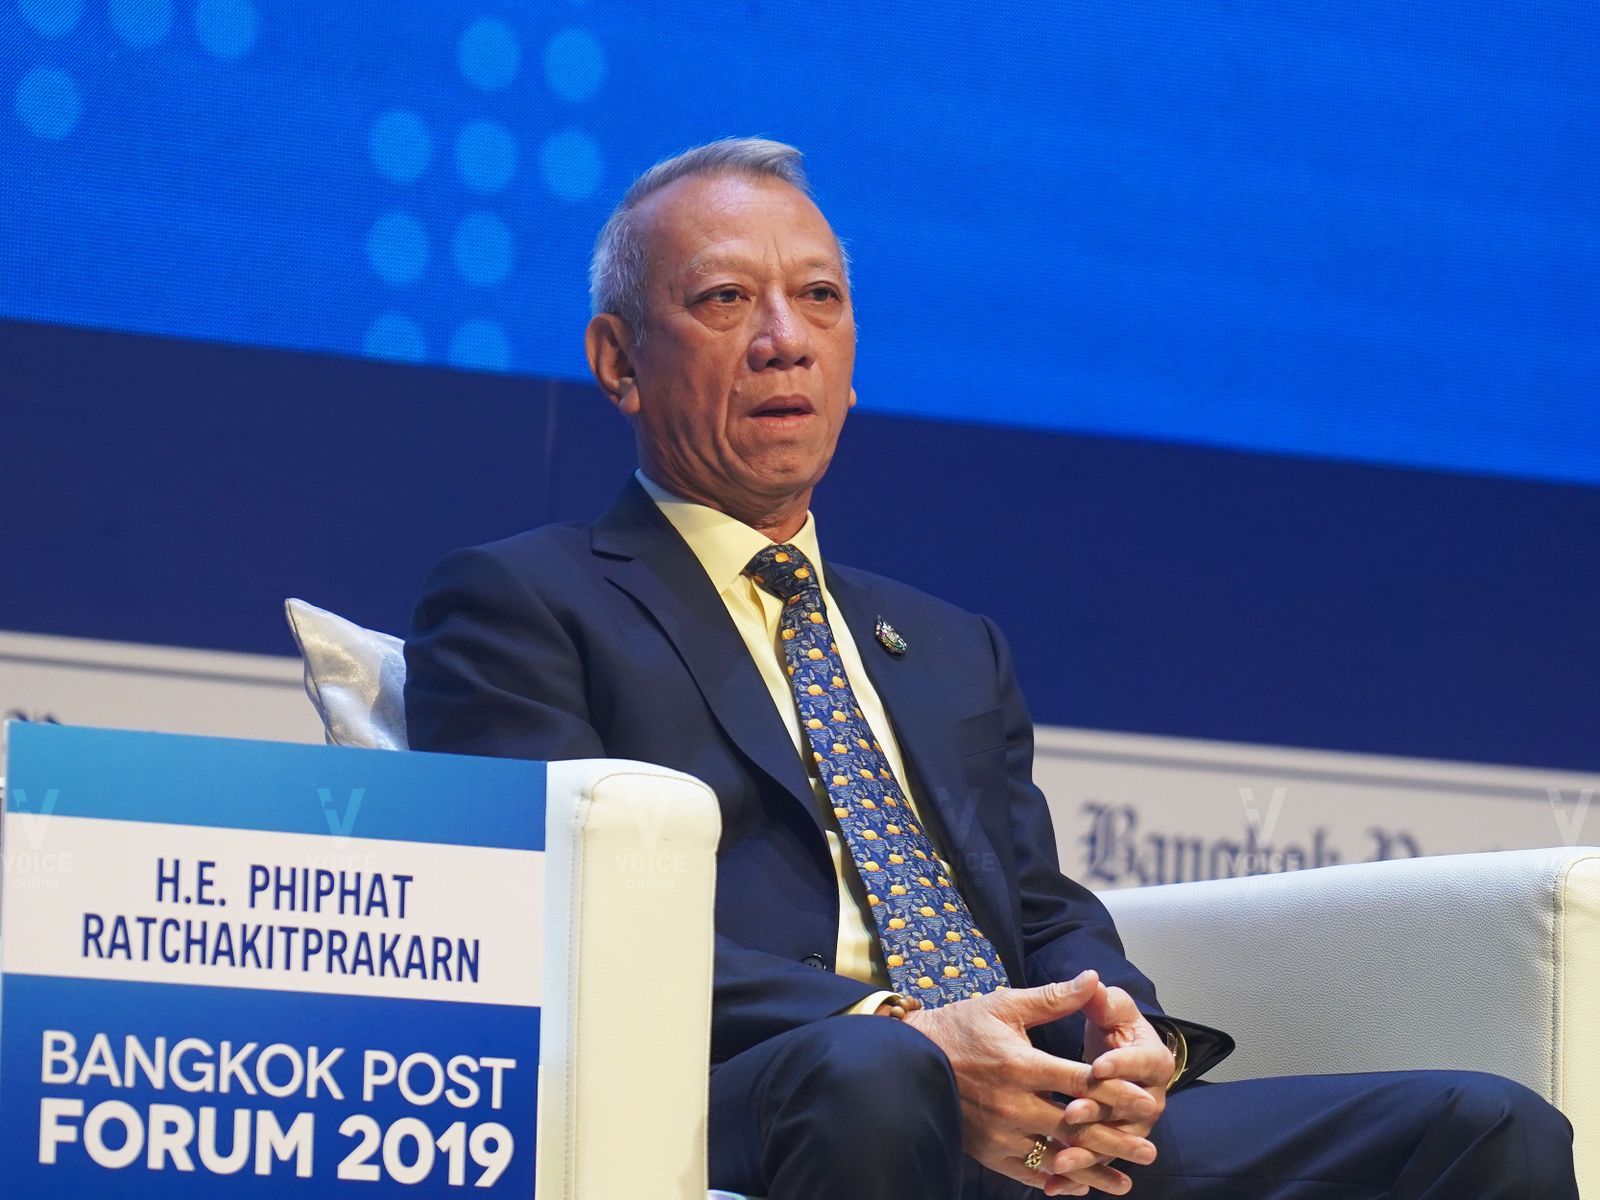 พิพัฒน์ รัชกิจประการ-งาน Bangkok Post Forum 2019